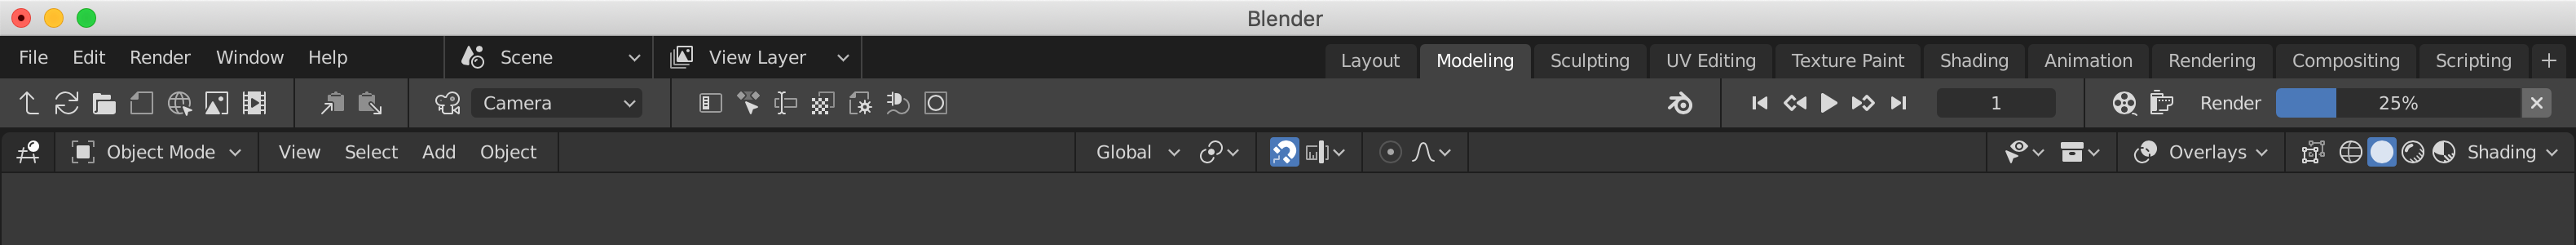 Download Blender UI Mockups (Updated) - User Feedback - Blender Developer Talk